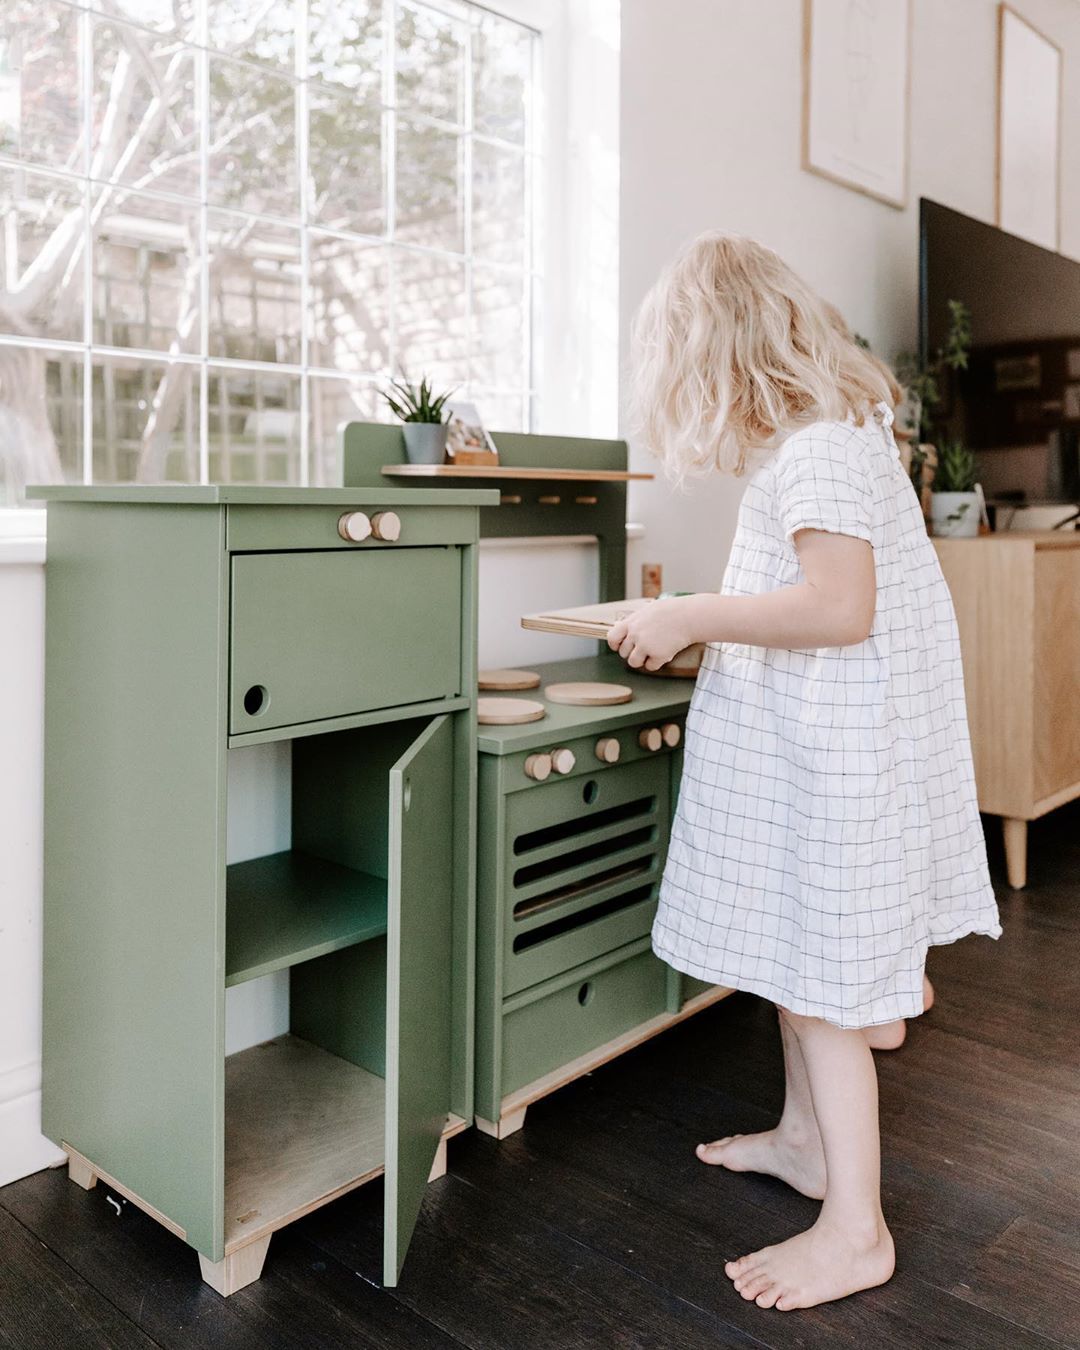 Midmini Kinderzimmermöbel: Dusty Green Plyholz-Spielkühlschrank - Perfekt für kleine Köche